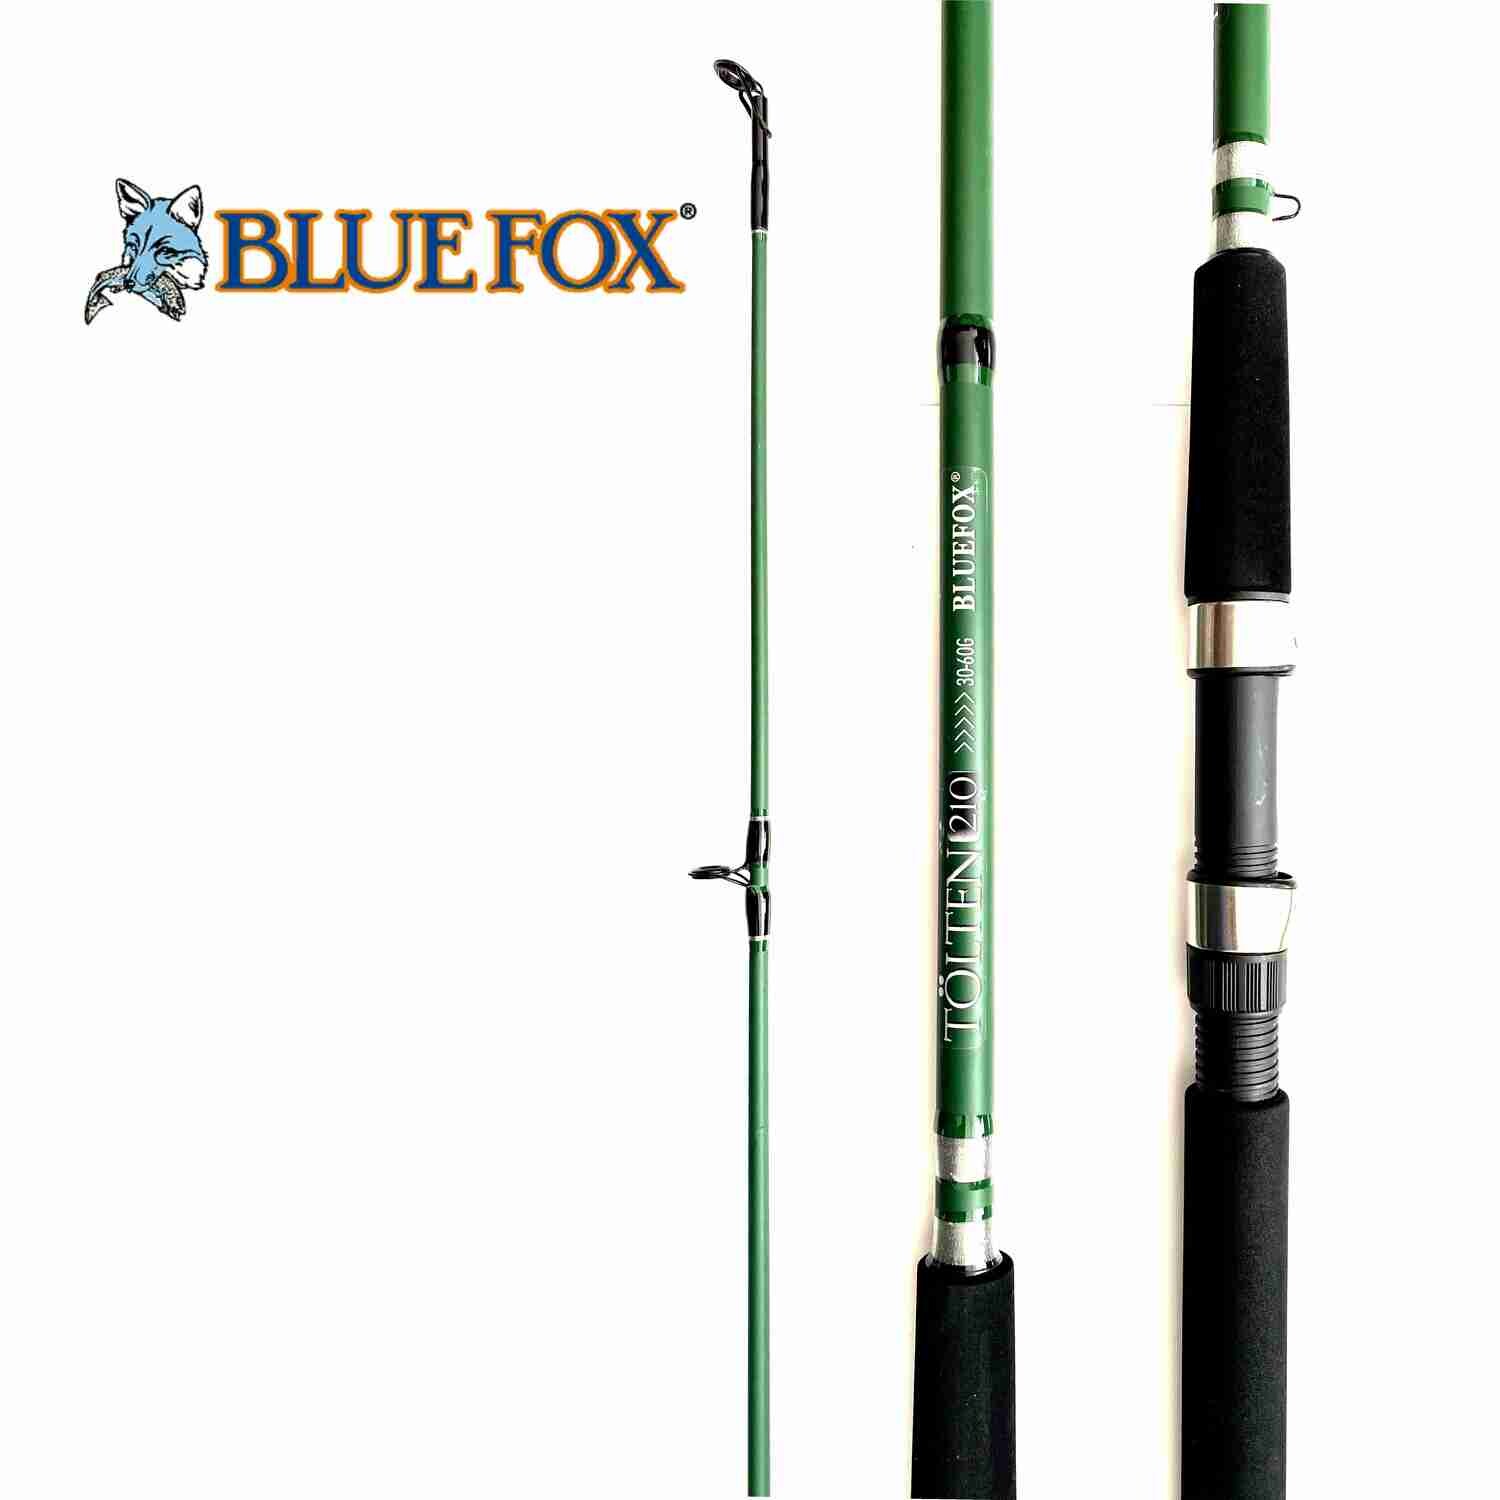 CAÑA DE PESCAR BLUE FOX MODELO TOLTEN SPINNING 1.80-2.10MTS / 30-60G